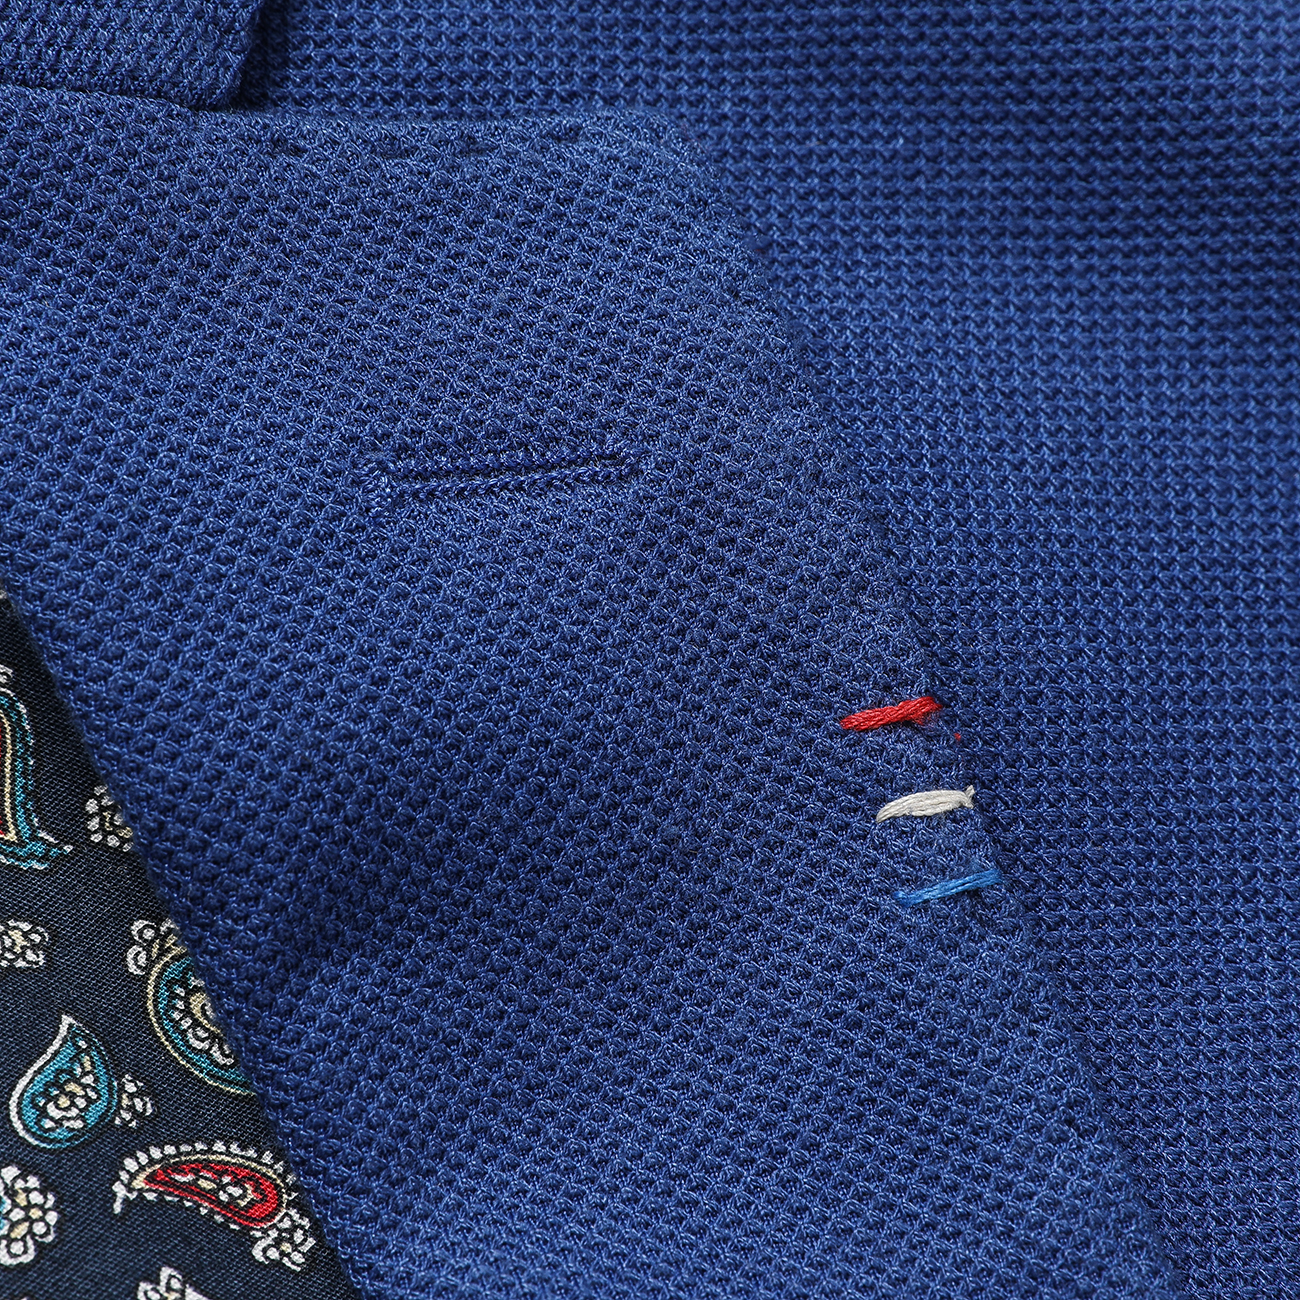 Men's Blue Patch Pocket Cotton Casual Suit Blazer Jackets